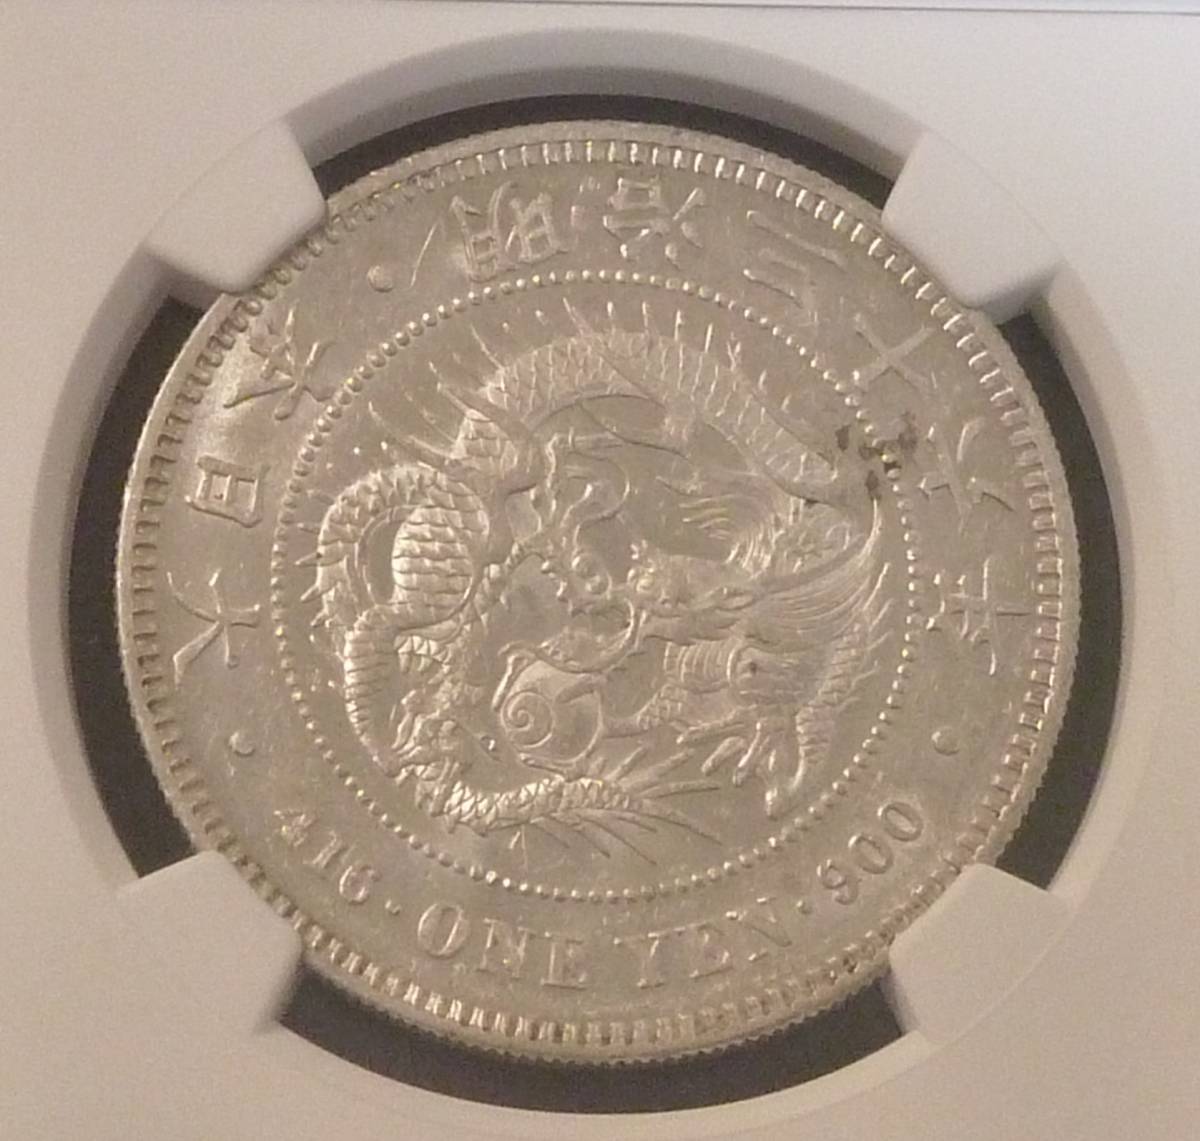 日本公式通販 新1円銀貨 MS61 明治36年 旧貨幣/金貨/銀貨/記念硬貨